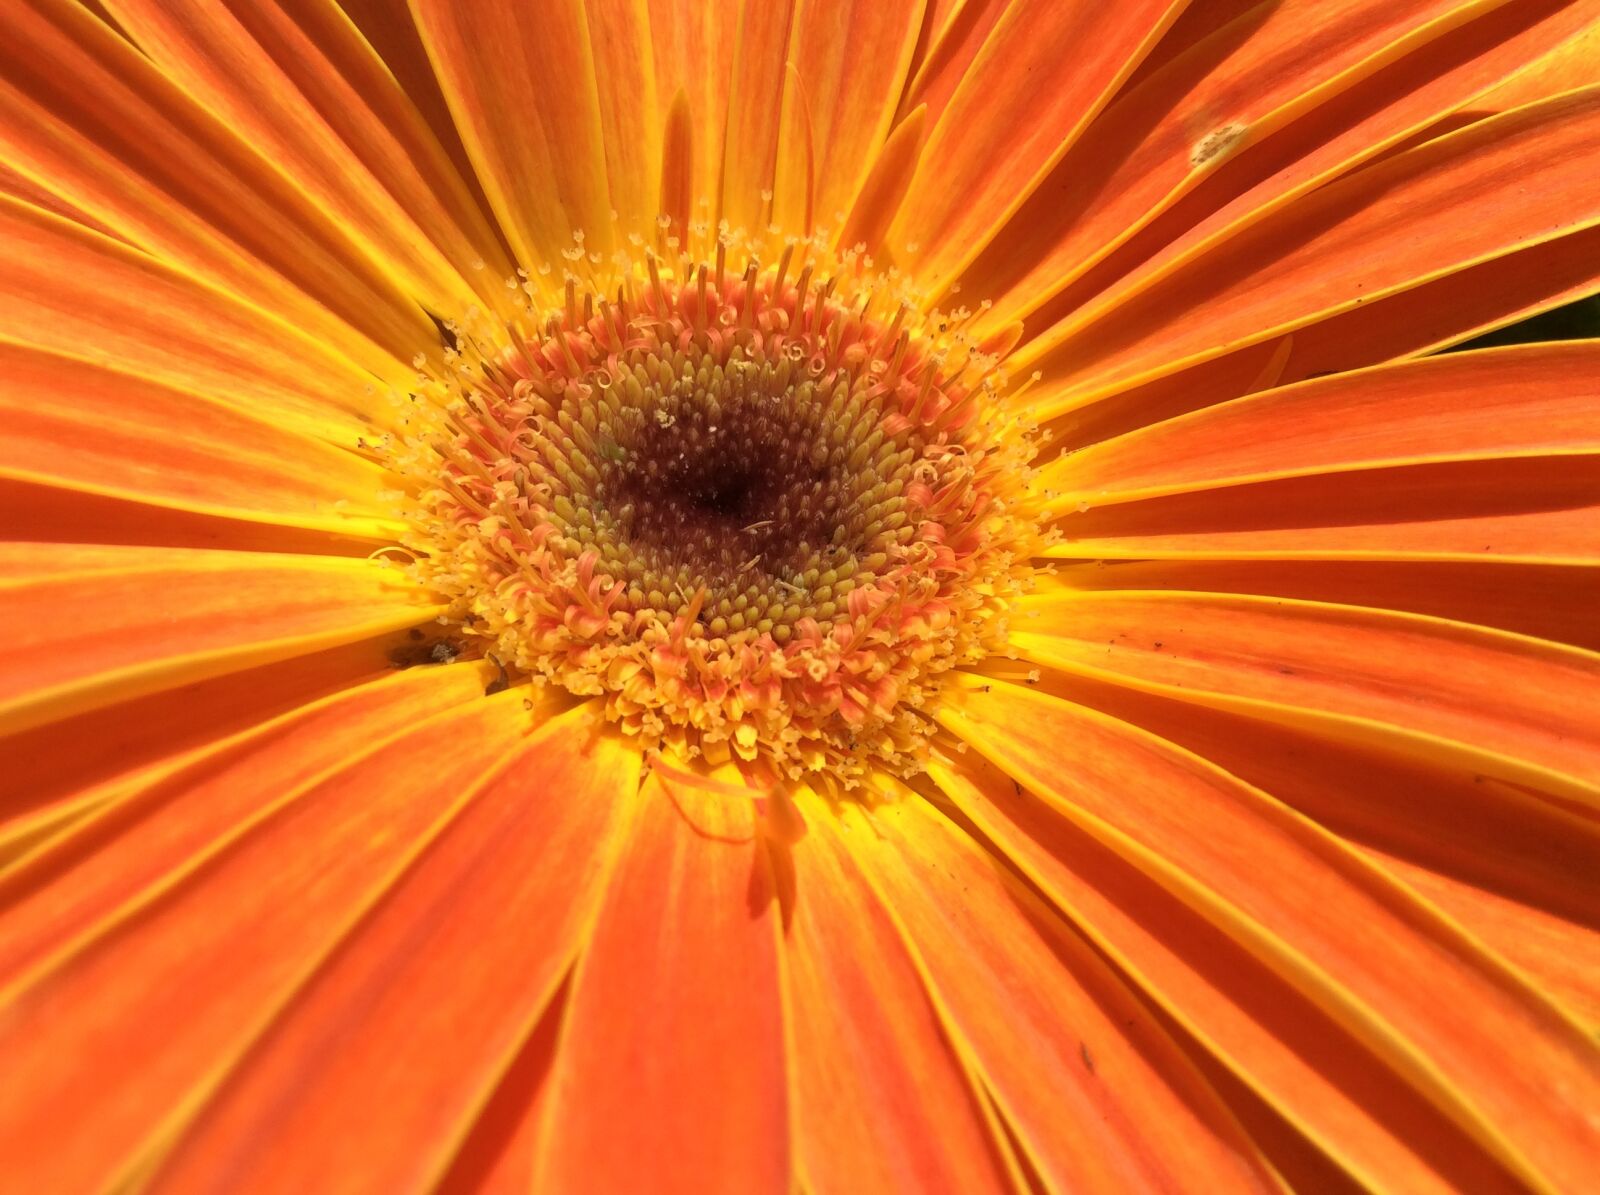 Apple iPad Air sample photo. Flower, daisy, floral photography